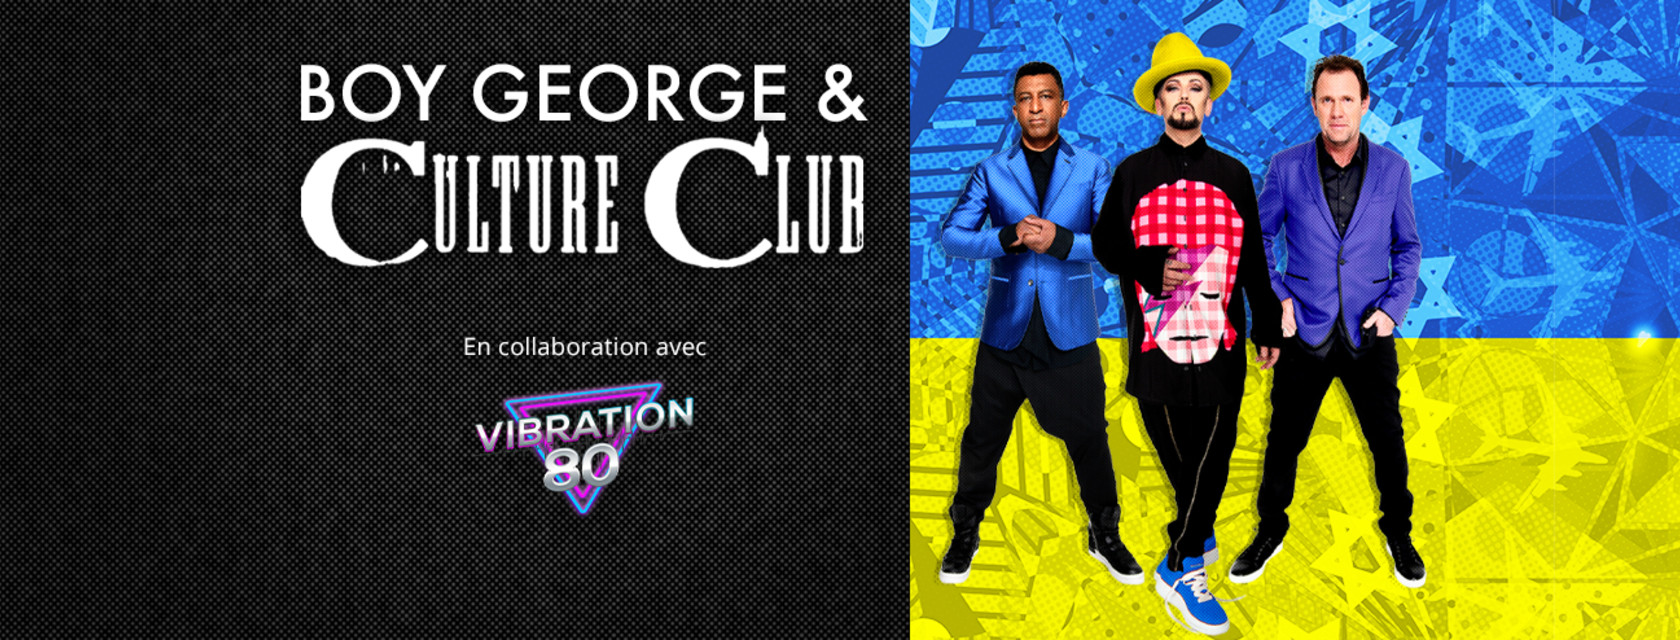 Boy George & Culture Club en exclusivité à l’Amphithéâtre Cogeco